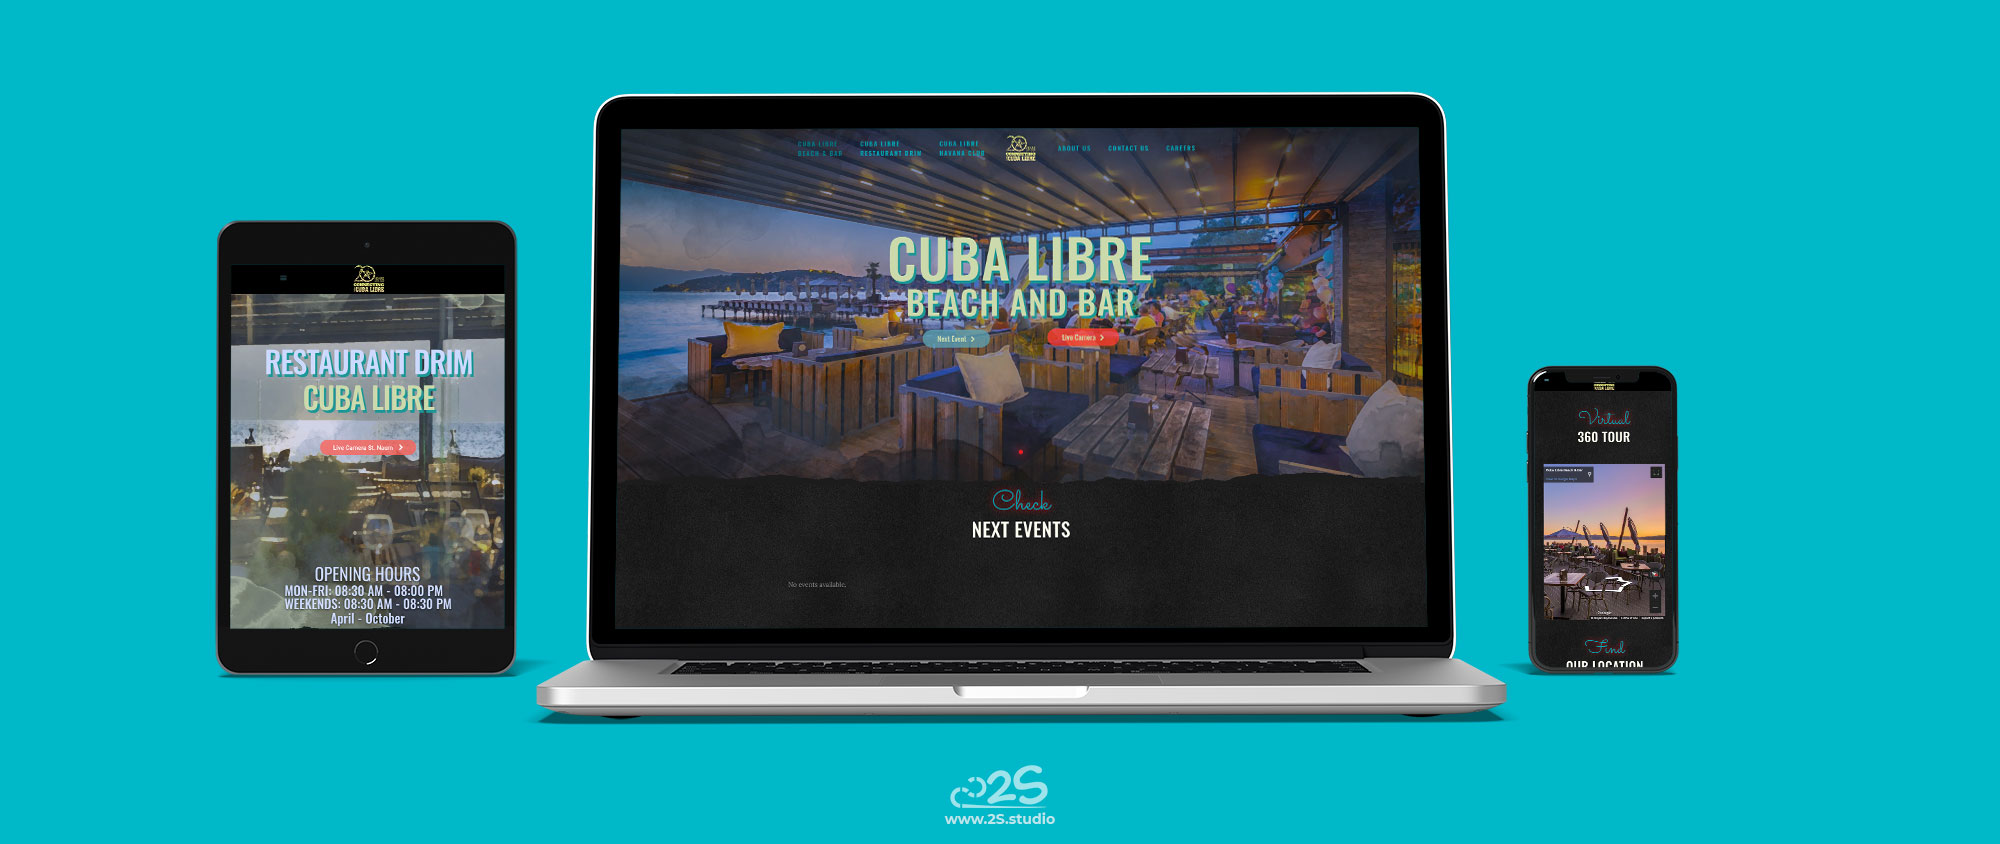 Cuba Libre – Web – 2019